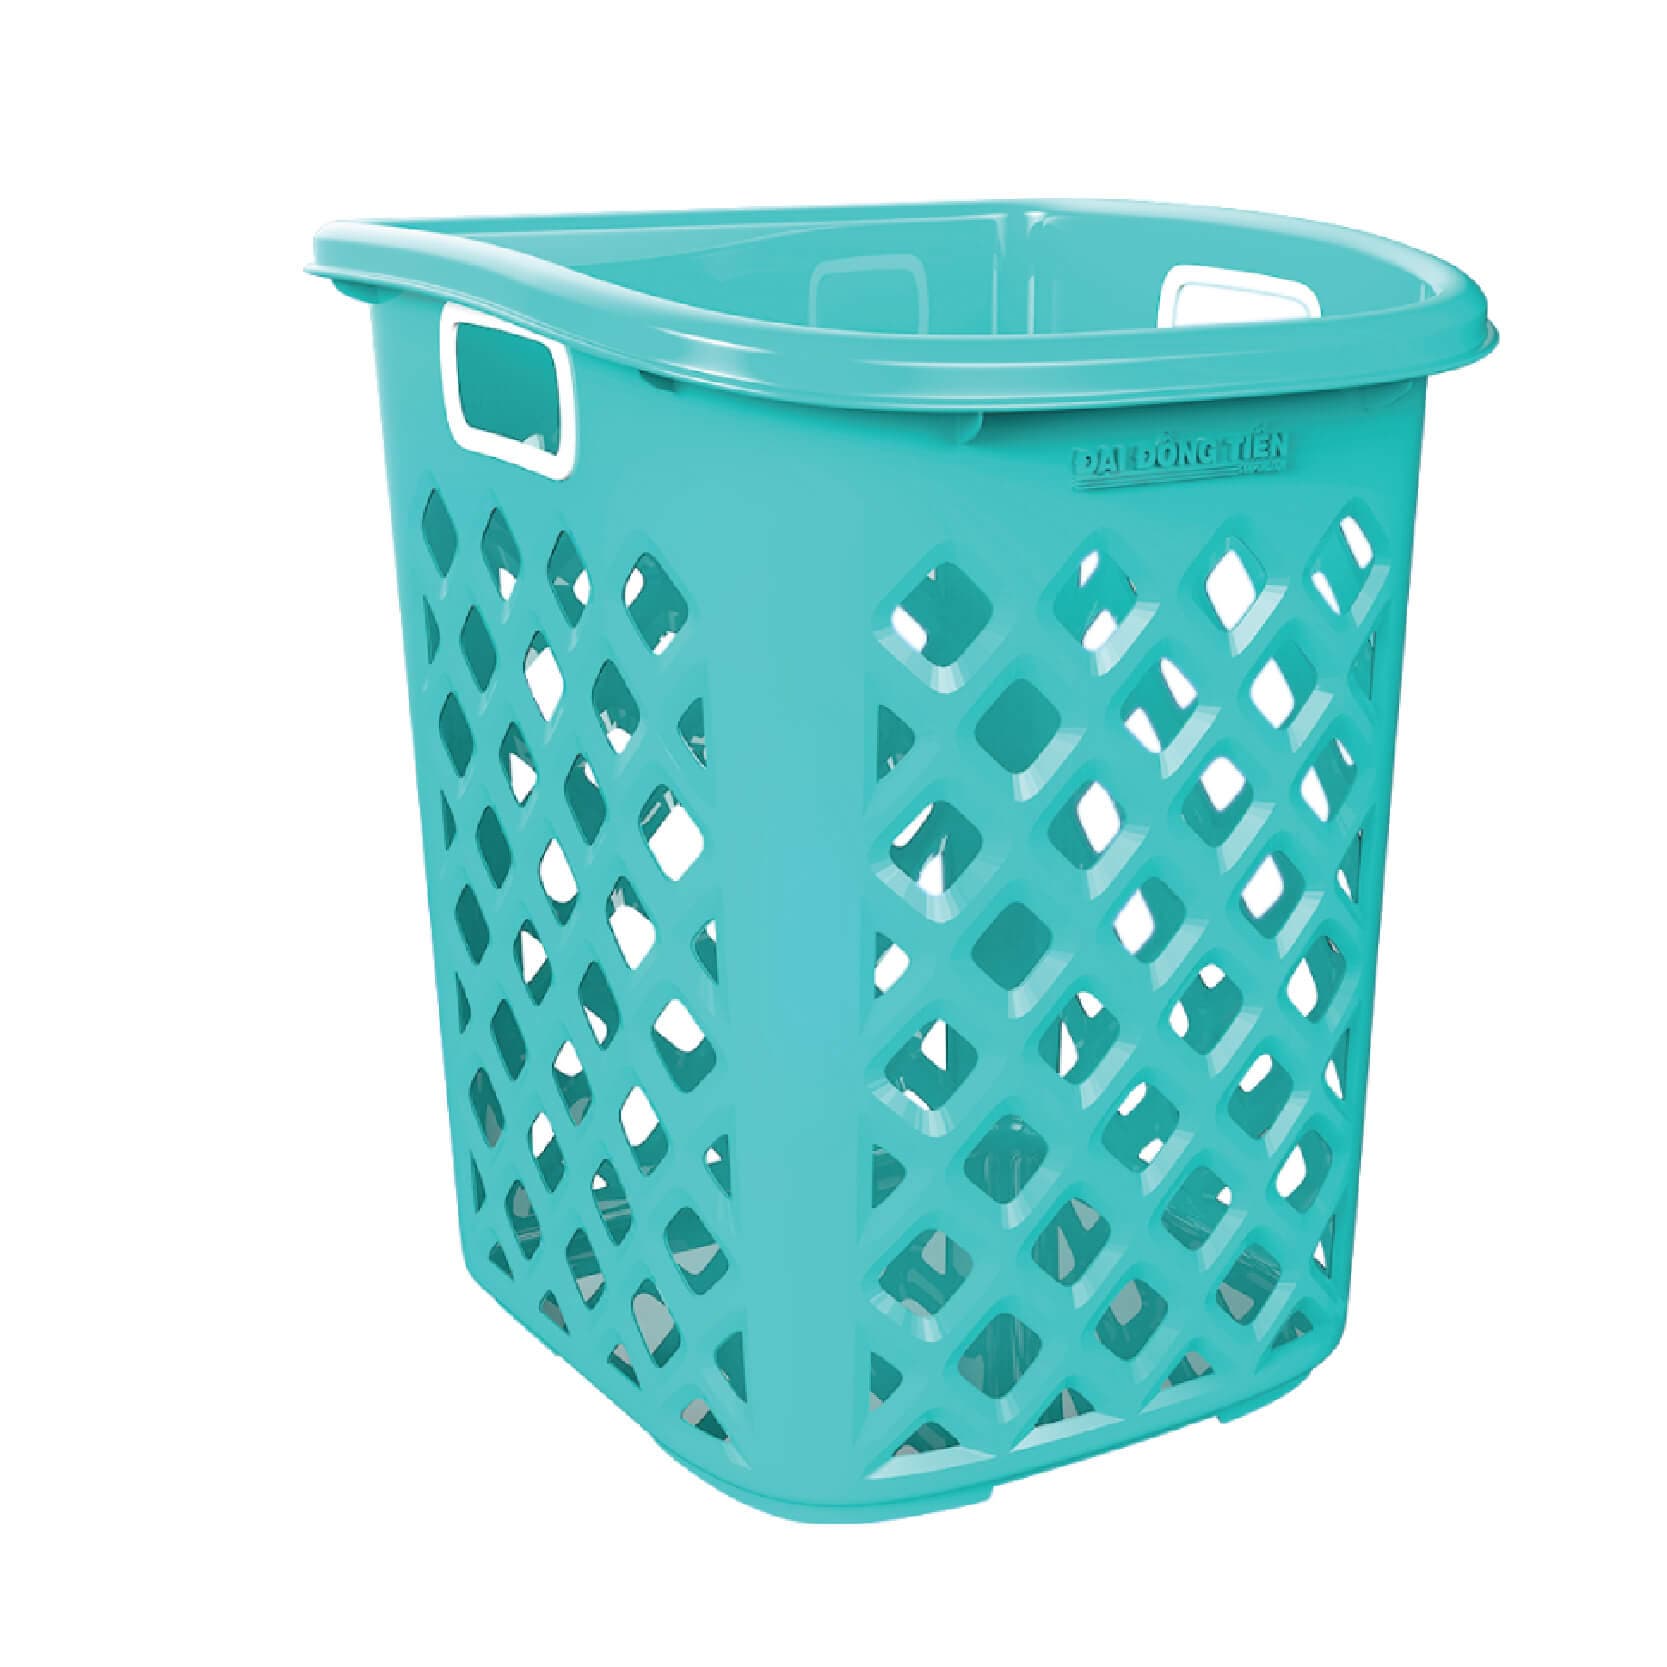 Household _ Laundry Basket _ Large Oval Basket